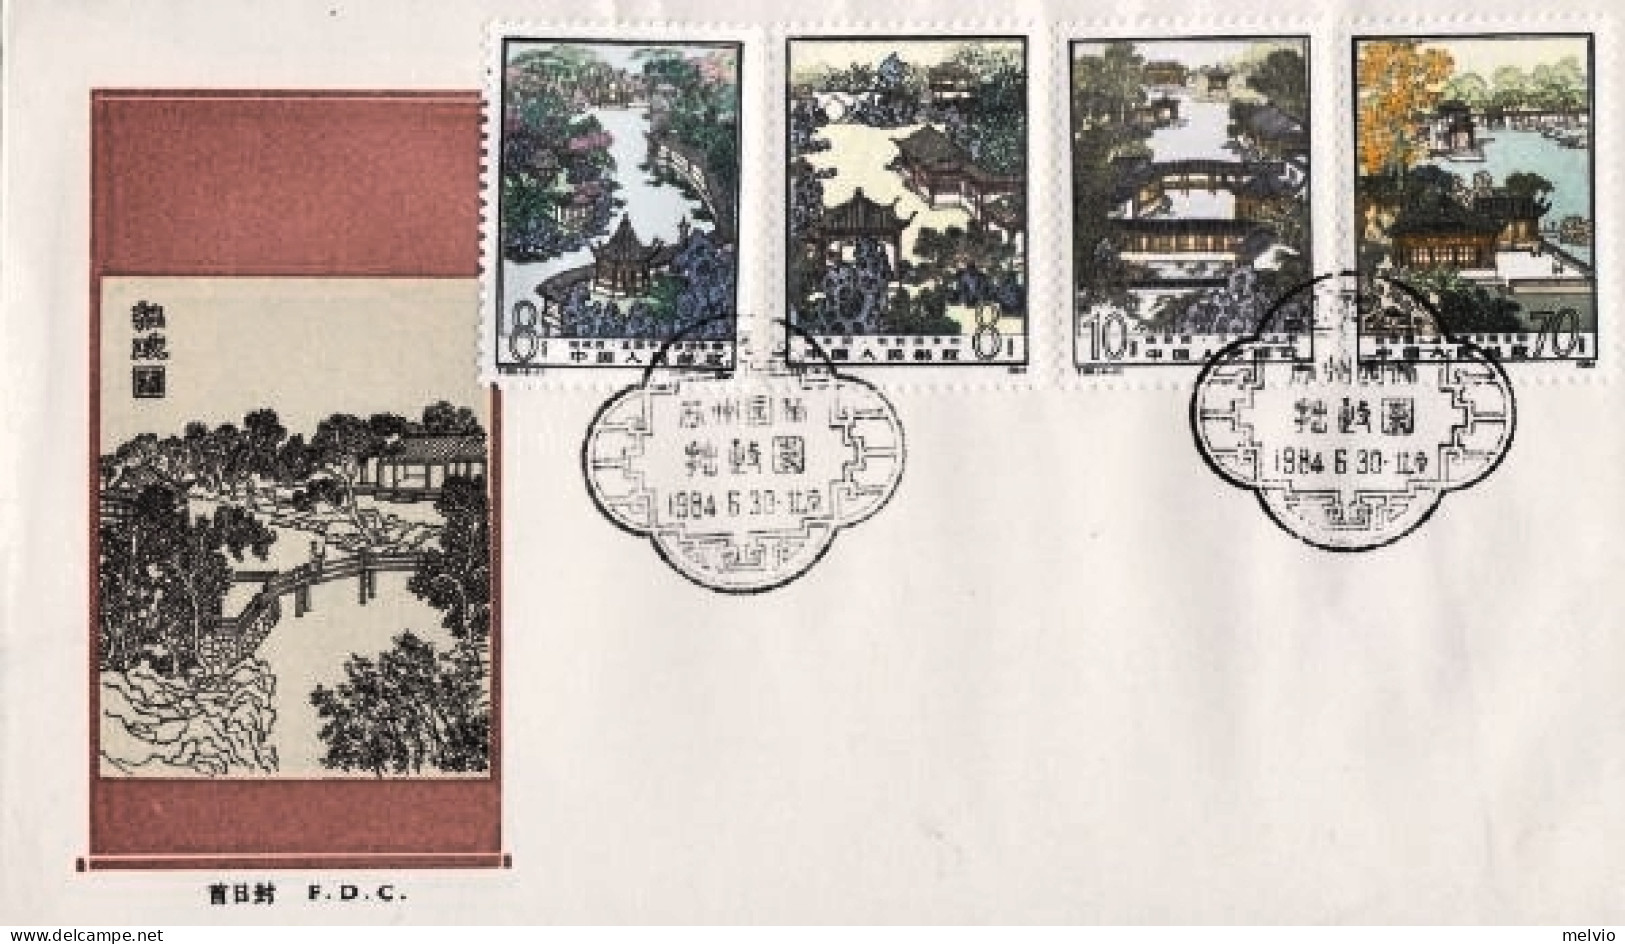 1984-Cina China T96, Scott1919-22 Suzhou Carden: Zhuo Zhengyuan Fdc - Briefe U. Dokumente